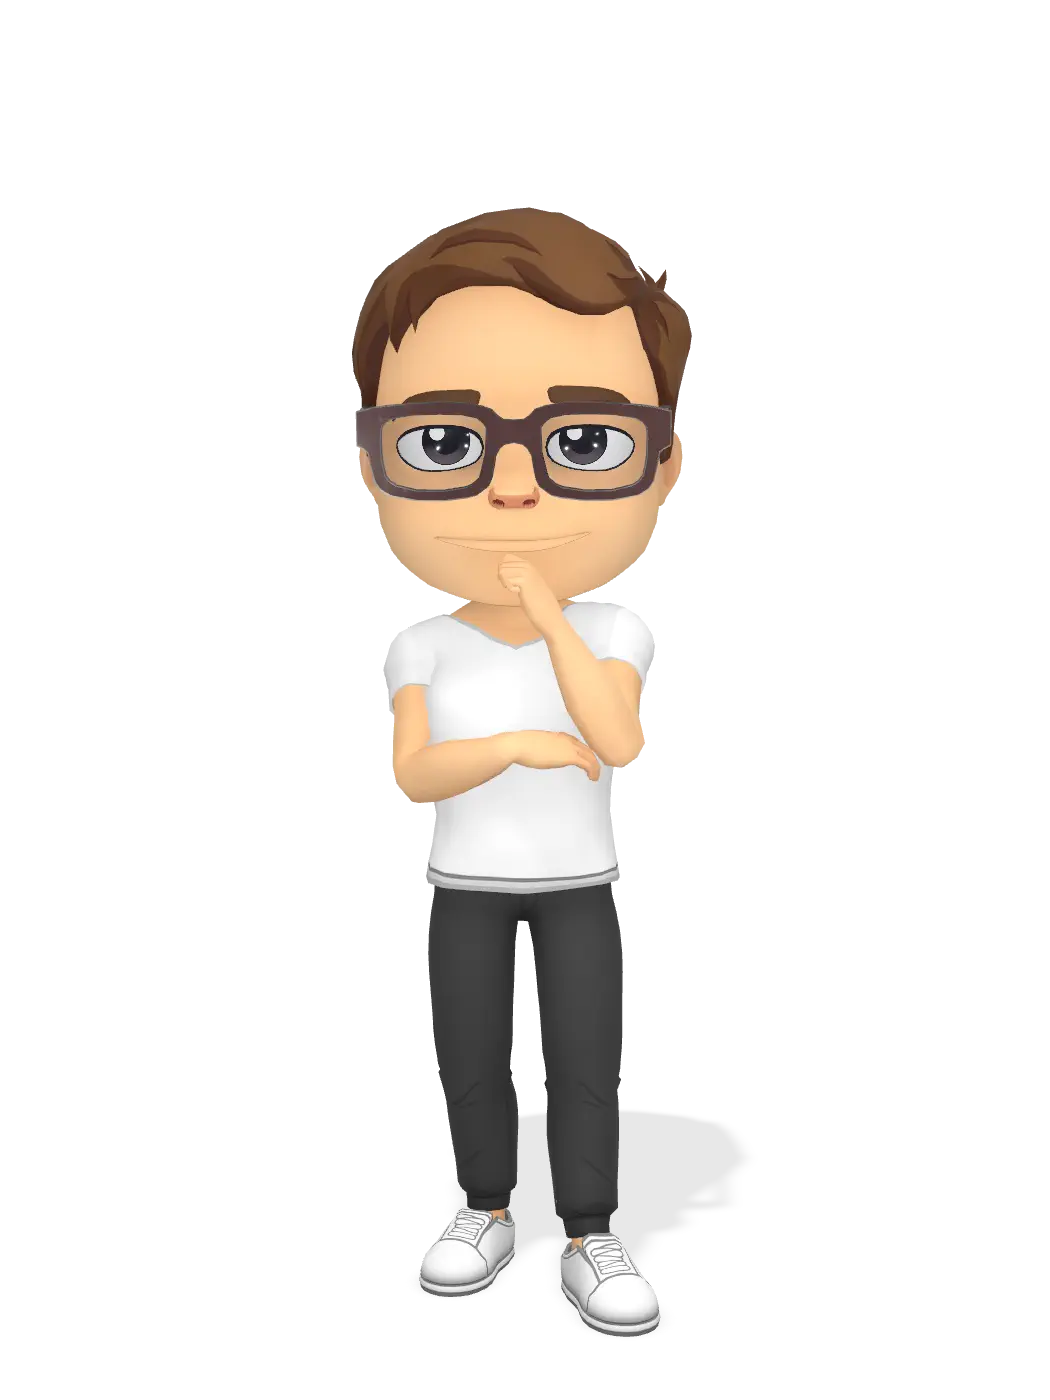 3D Bitmoji for mattspack avatar